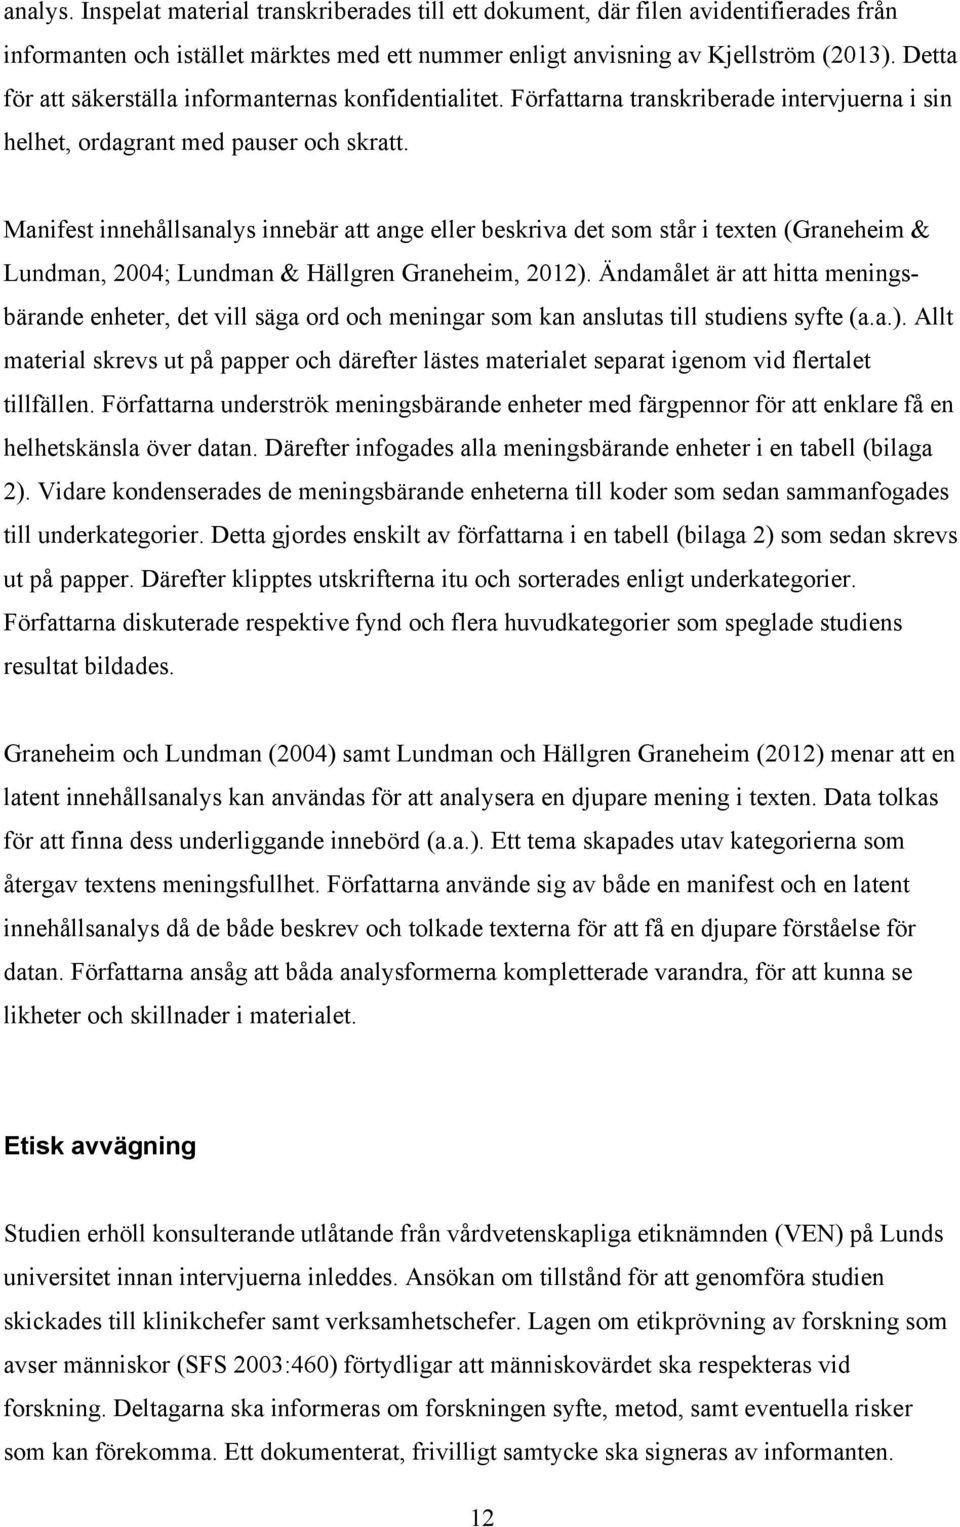 Manifest innehållsanalys innebär att ange eller beskriva det som står i texten (Graneheim & Lundman, 2004; Lundman & Hällgren Graneheim, 2012).